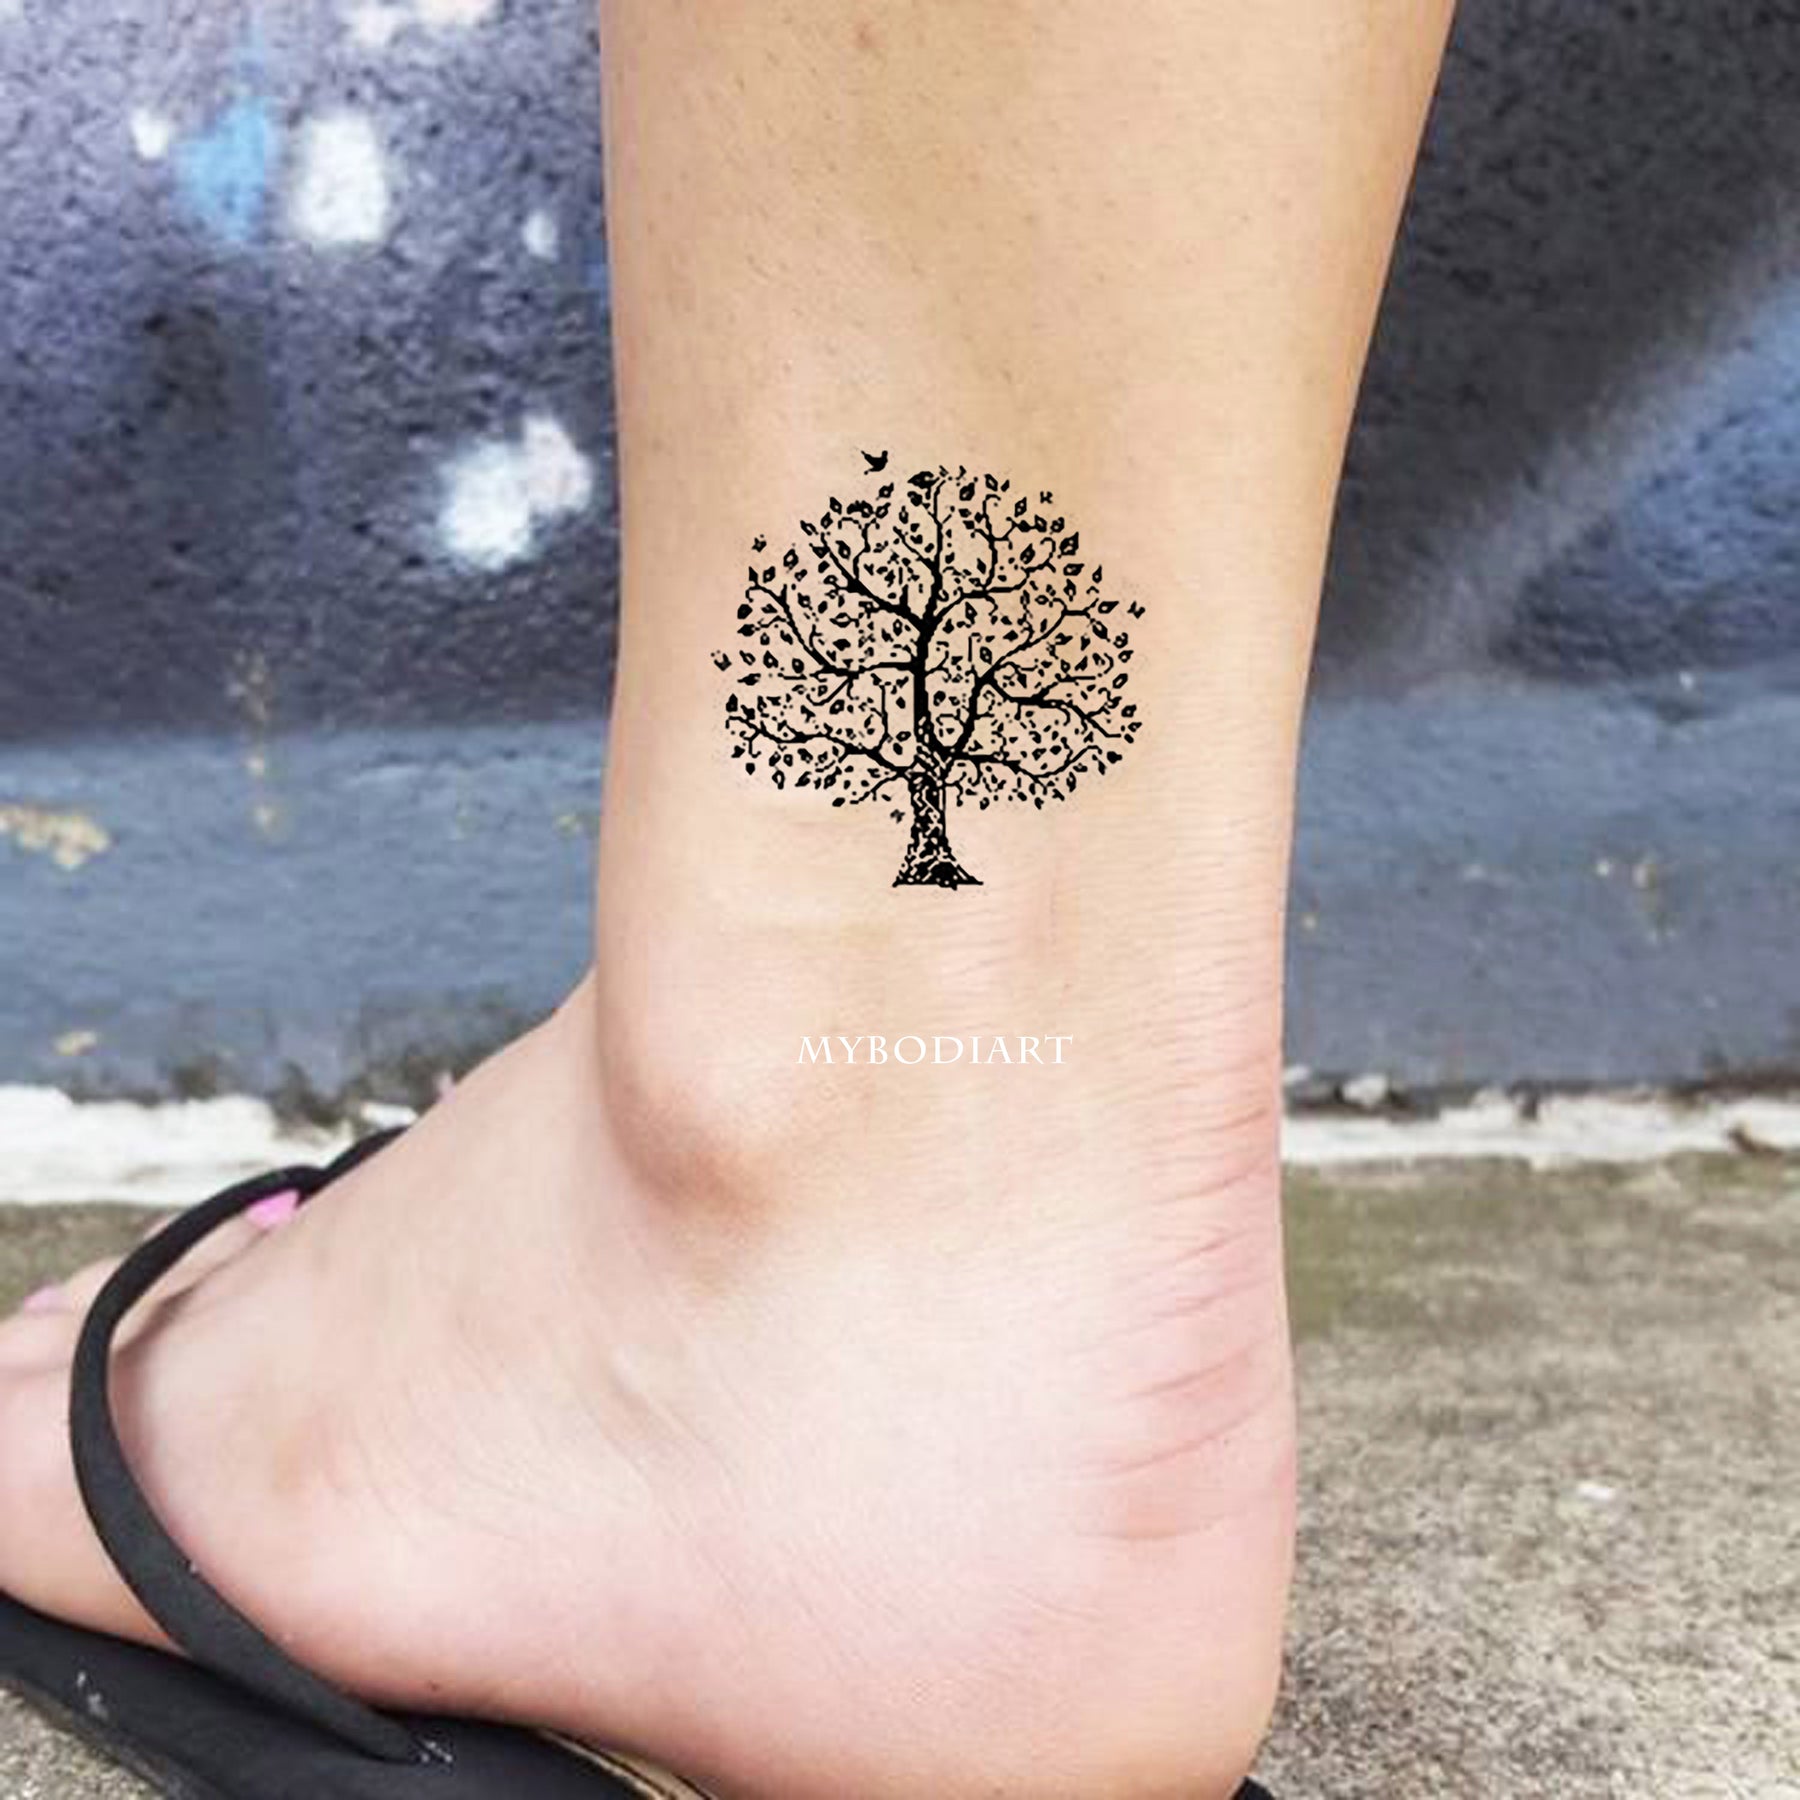 My Oak Tree tattoo that I got done in April. : r/tattoos